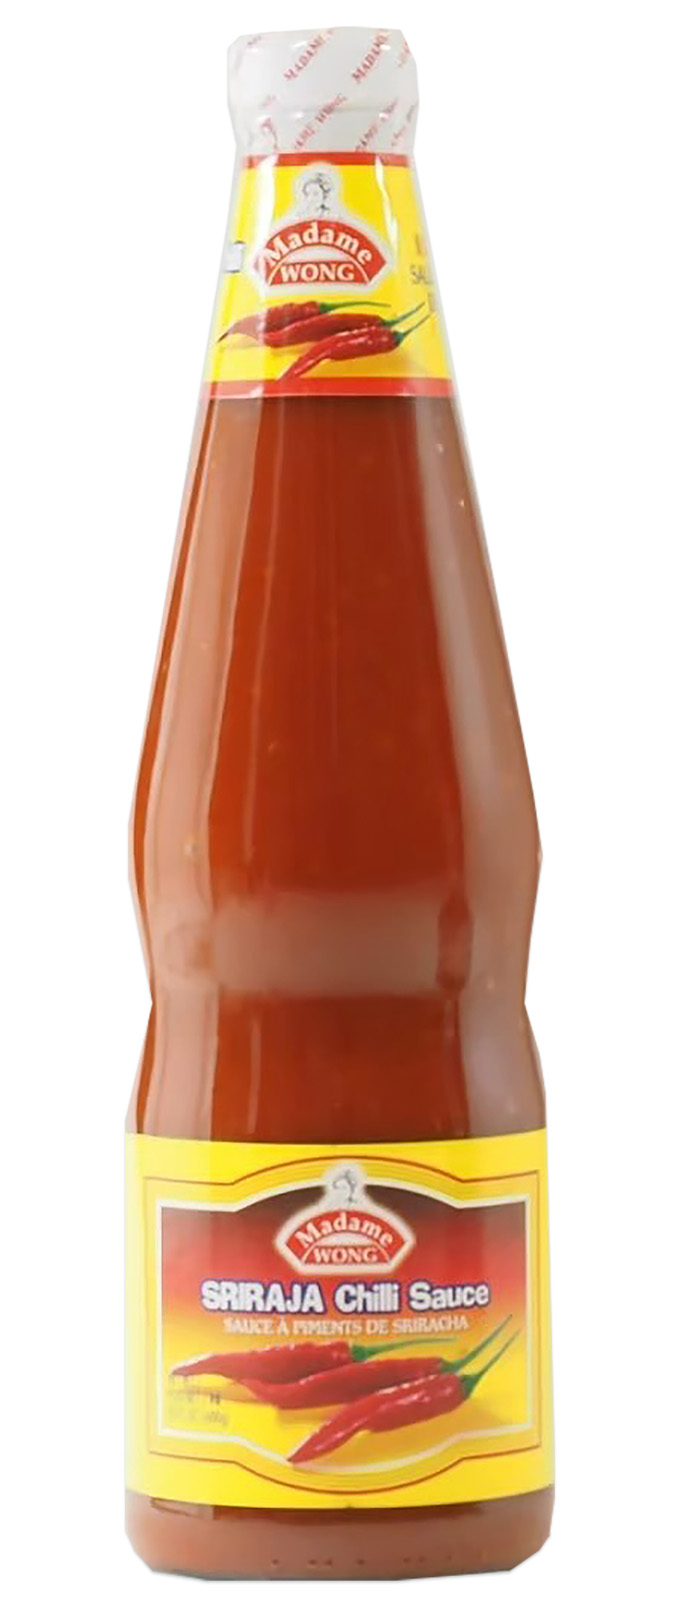 Sriracha-Chilisauce